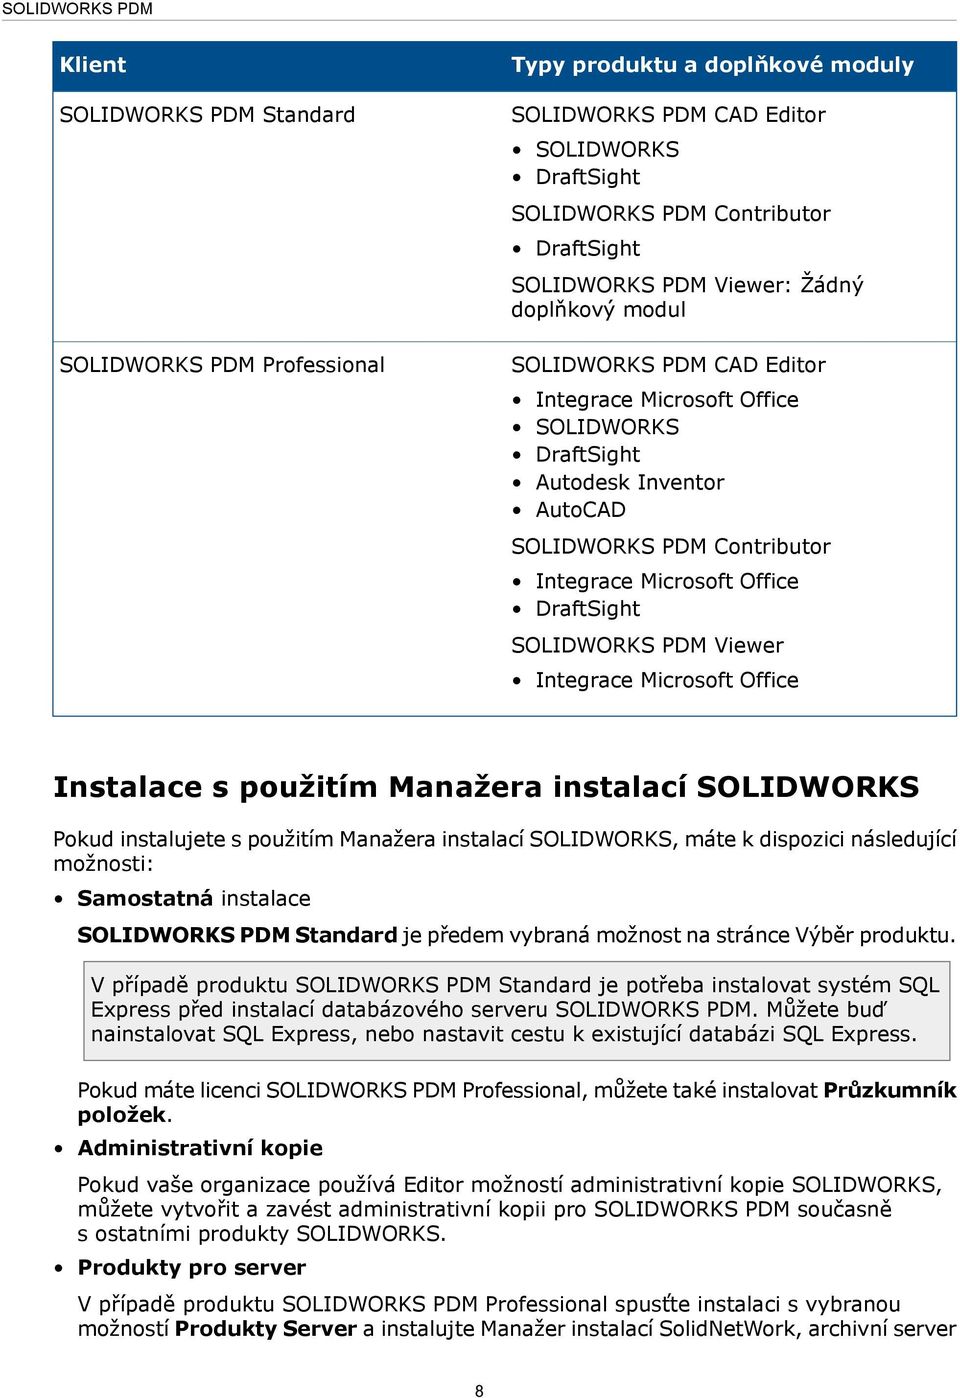 SOLIDWORKS PDM Viewer Integrace Microsoft Office Instalace s použitím Manažera instalací SOLIDWORKS Pokud instalujete s použitím Manažera instalací SOLIDWORKS, máte k dispozici následující možnosti: